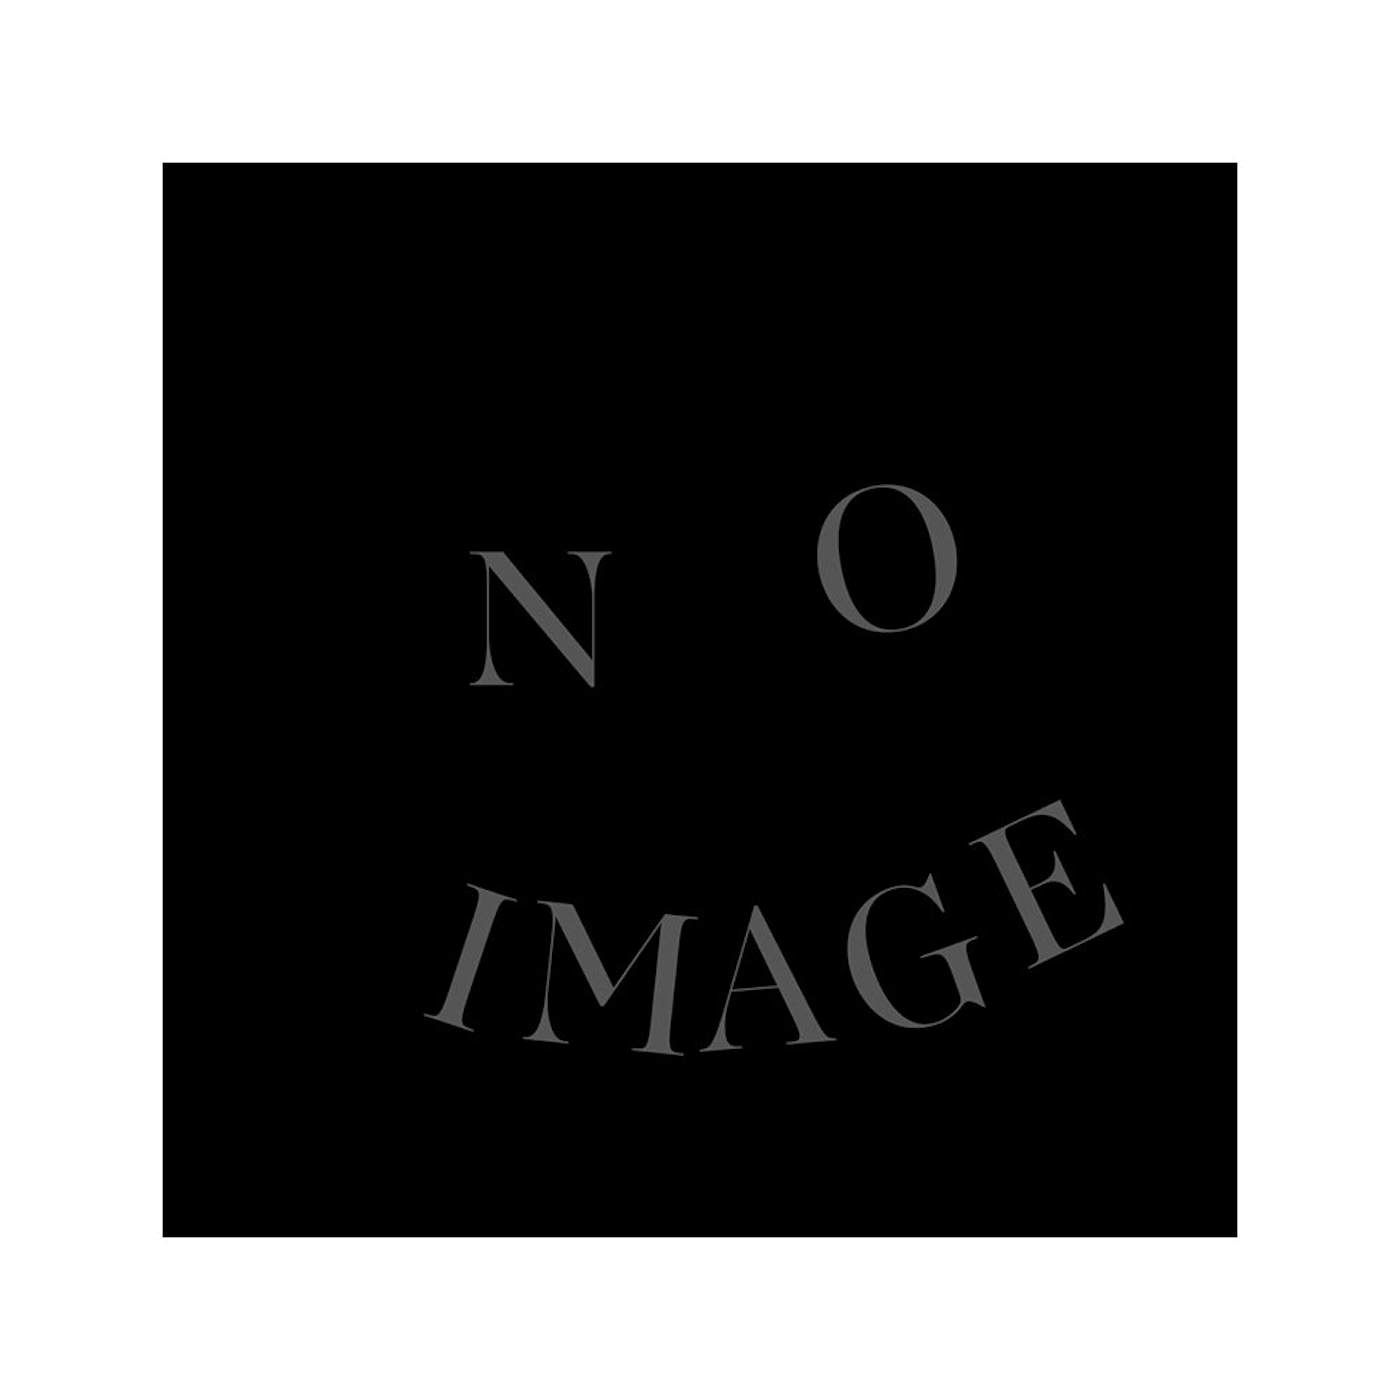 GGGOLDDD "No Image" CD